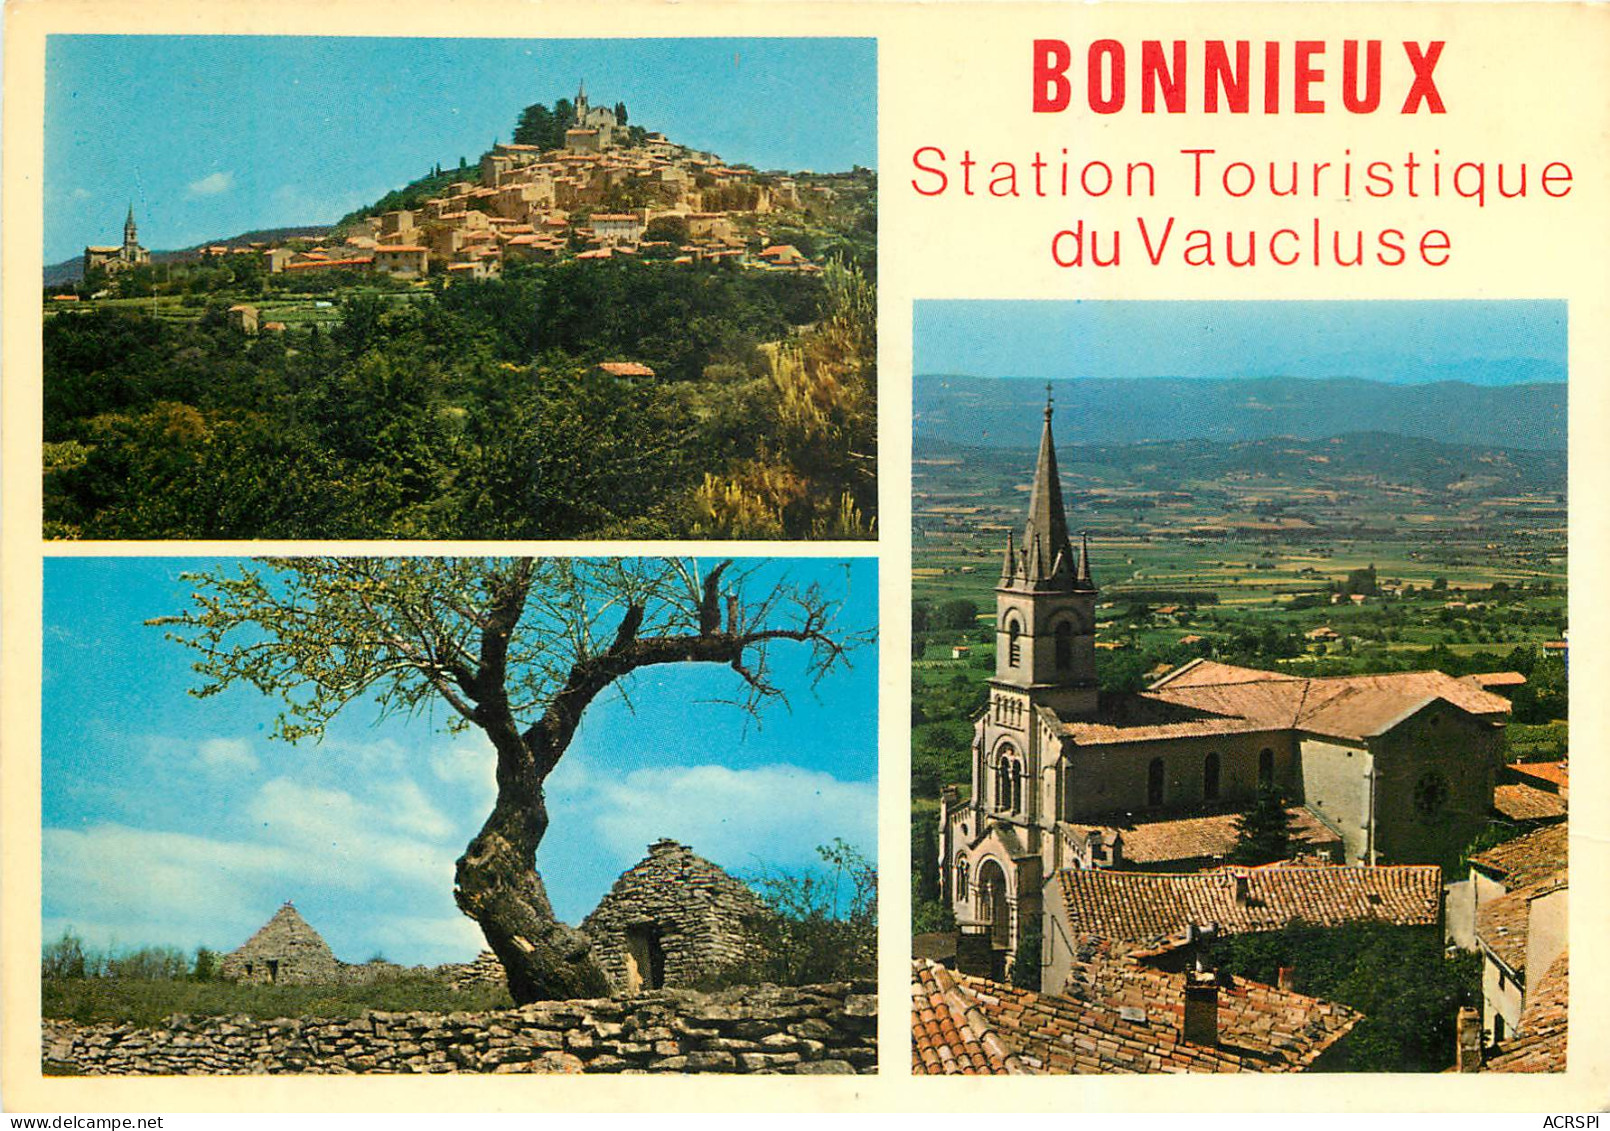 BONNIEUX Altitude 430 Metre 30(scan Recto Verso)MF2704 - Bonnieux